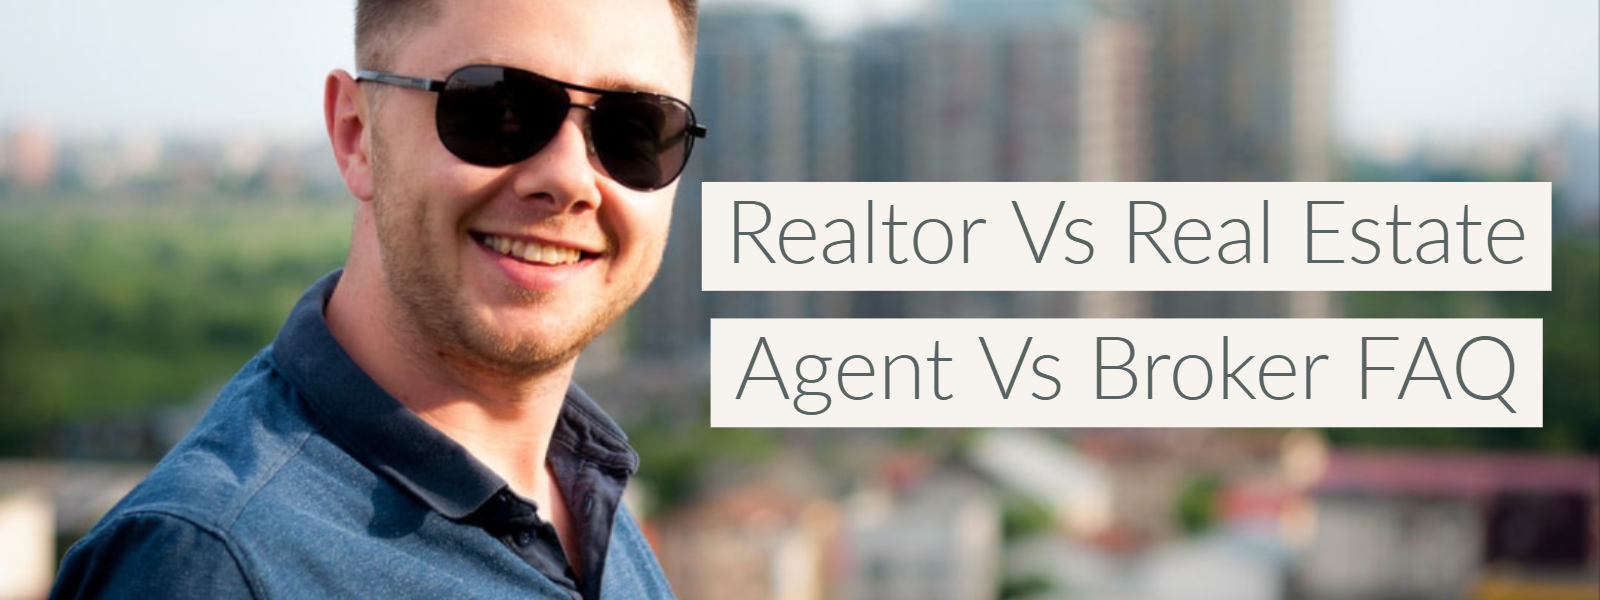 Realtor Vs Real Estate Agent Vs Broker FAQ